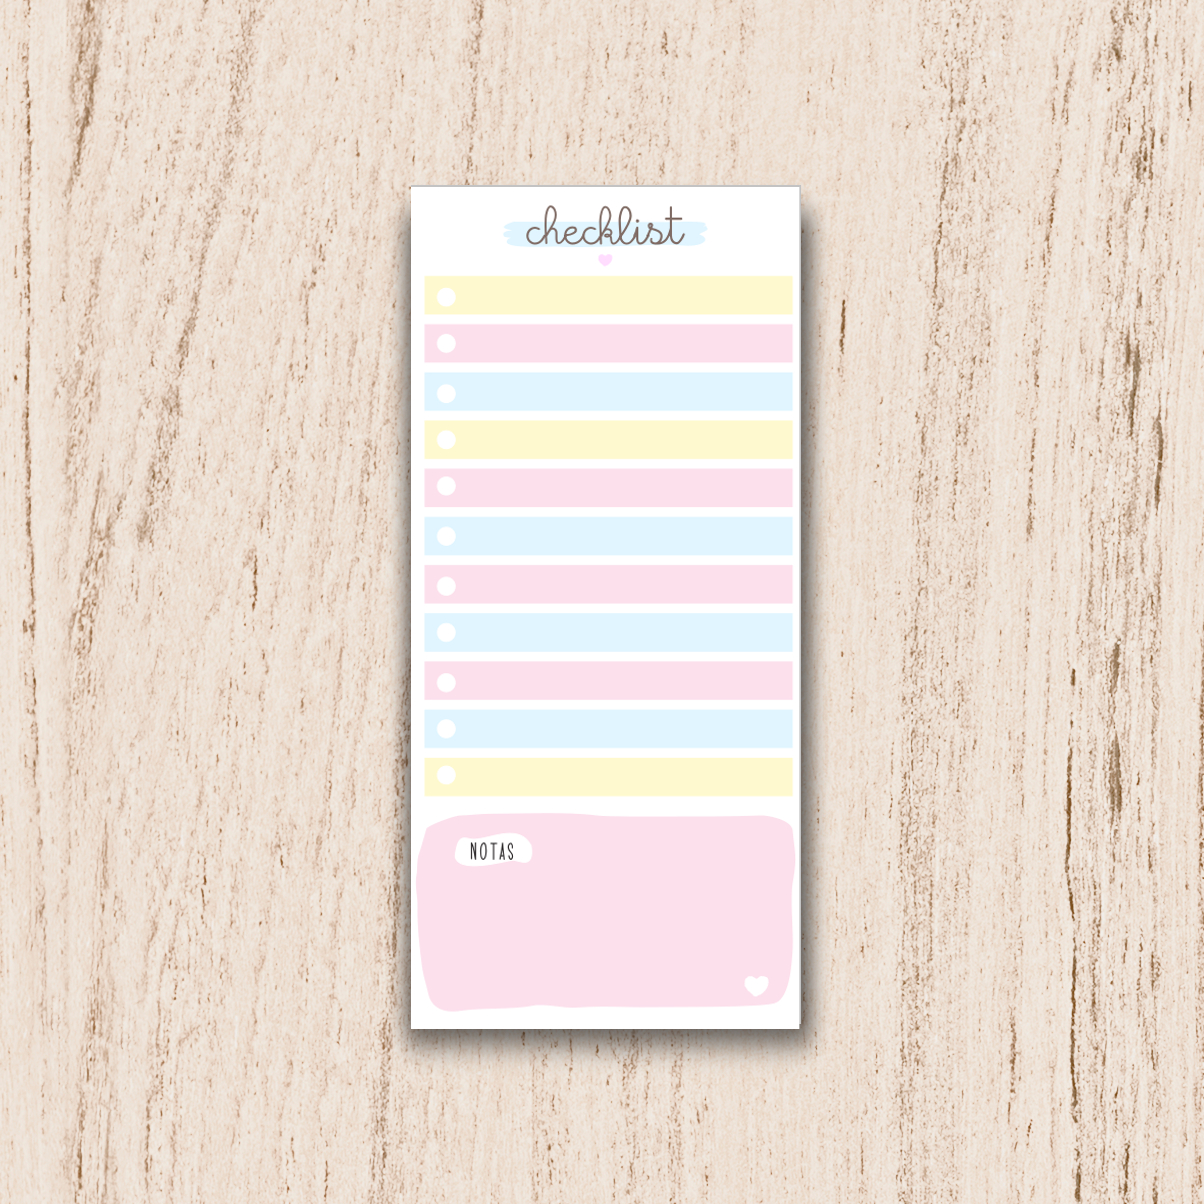 bloco checklist colorido